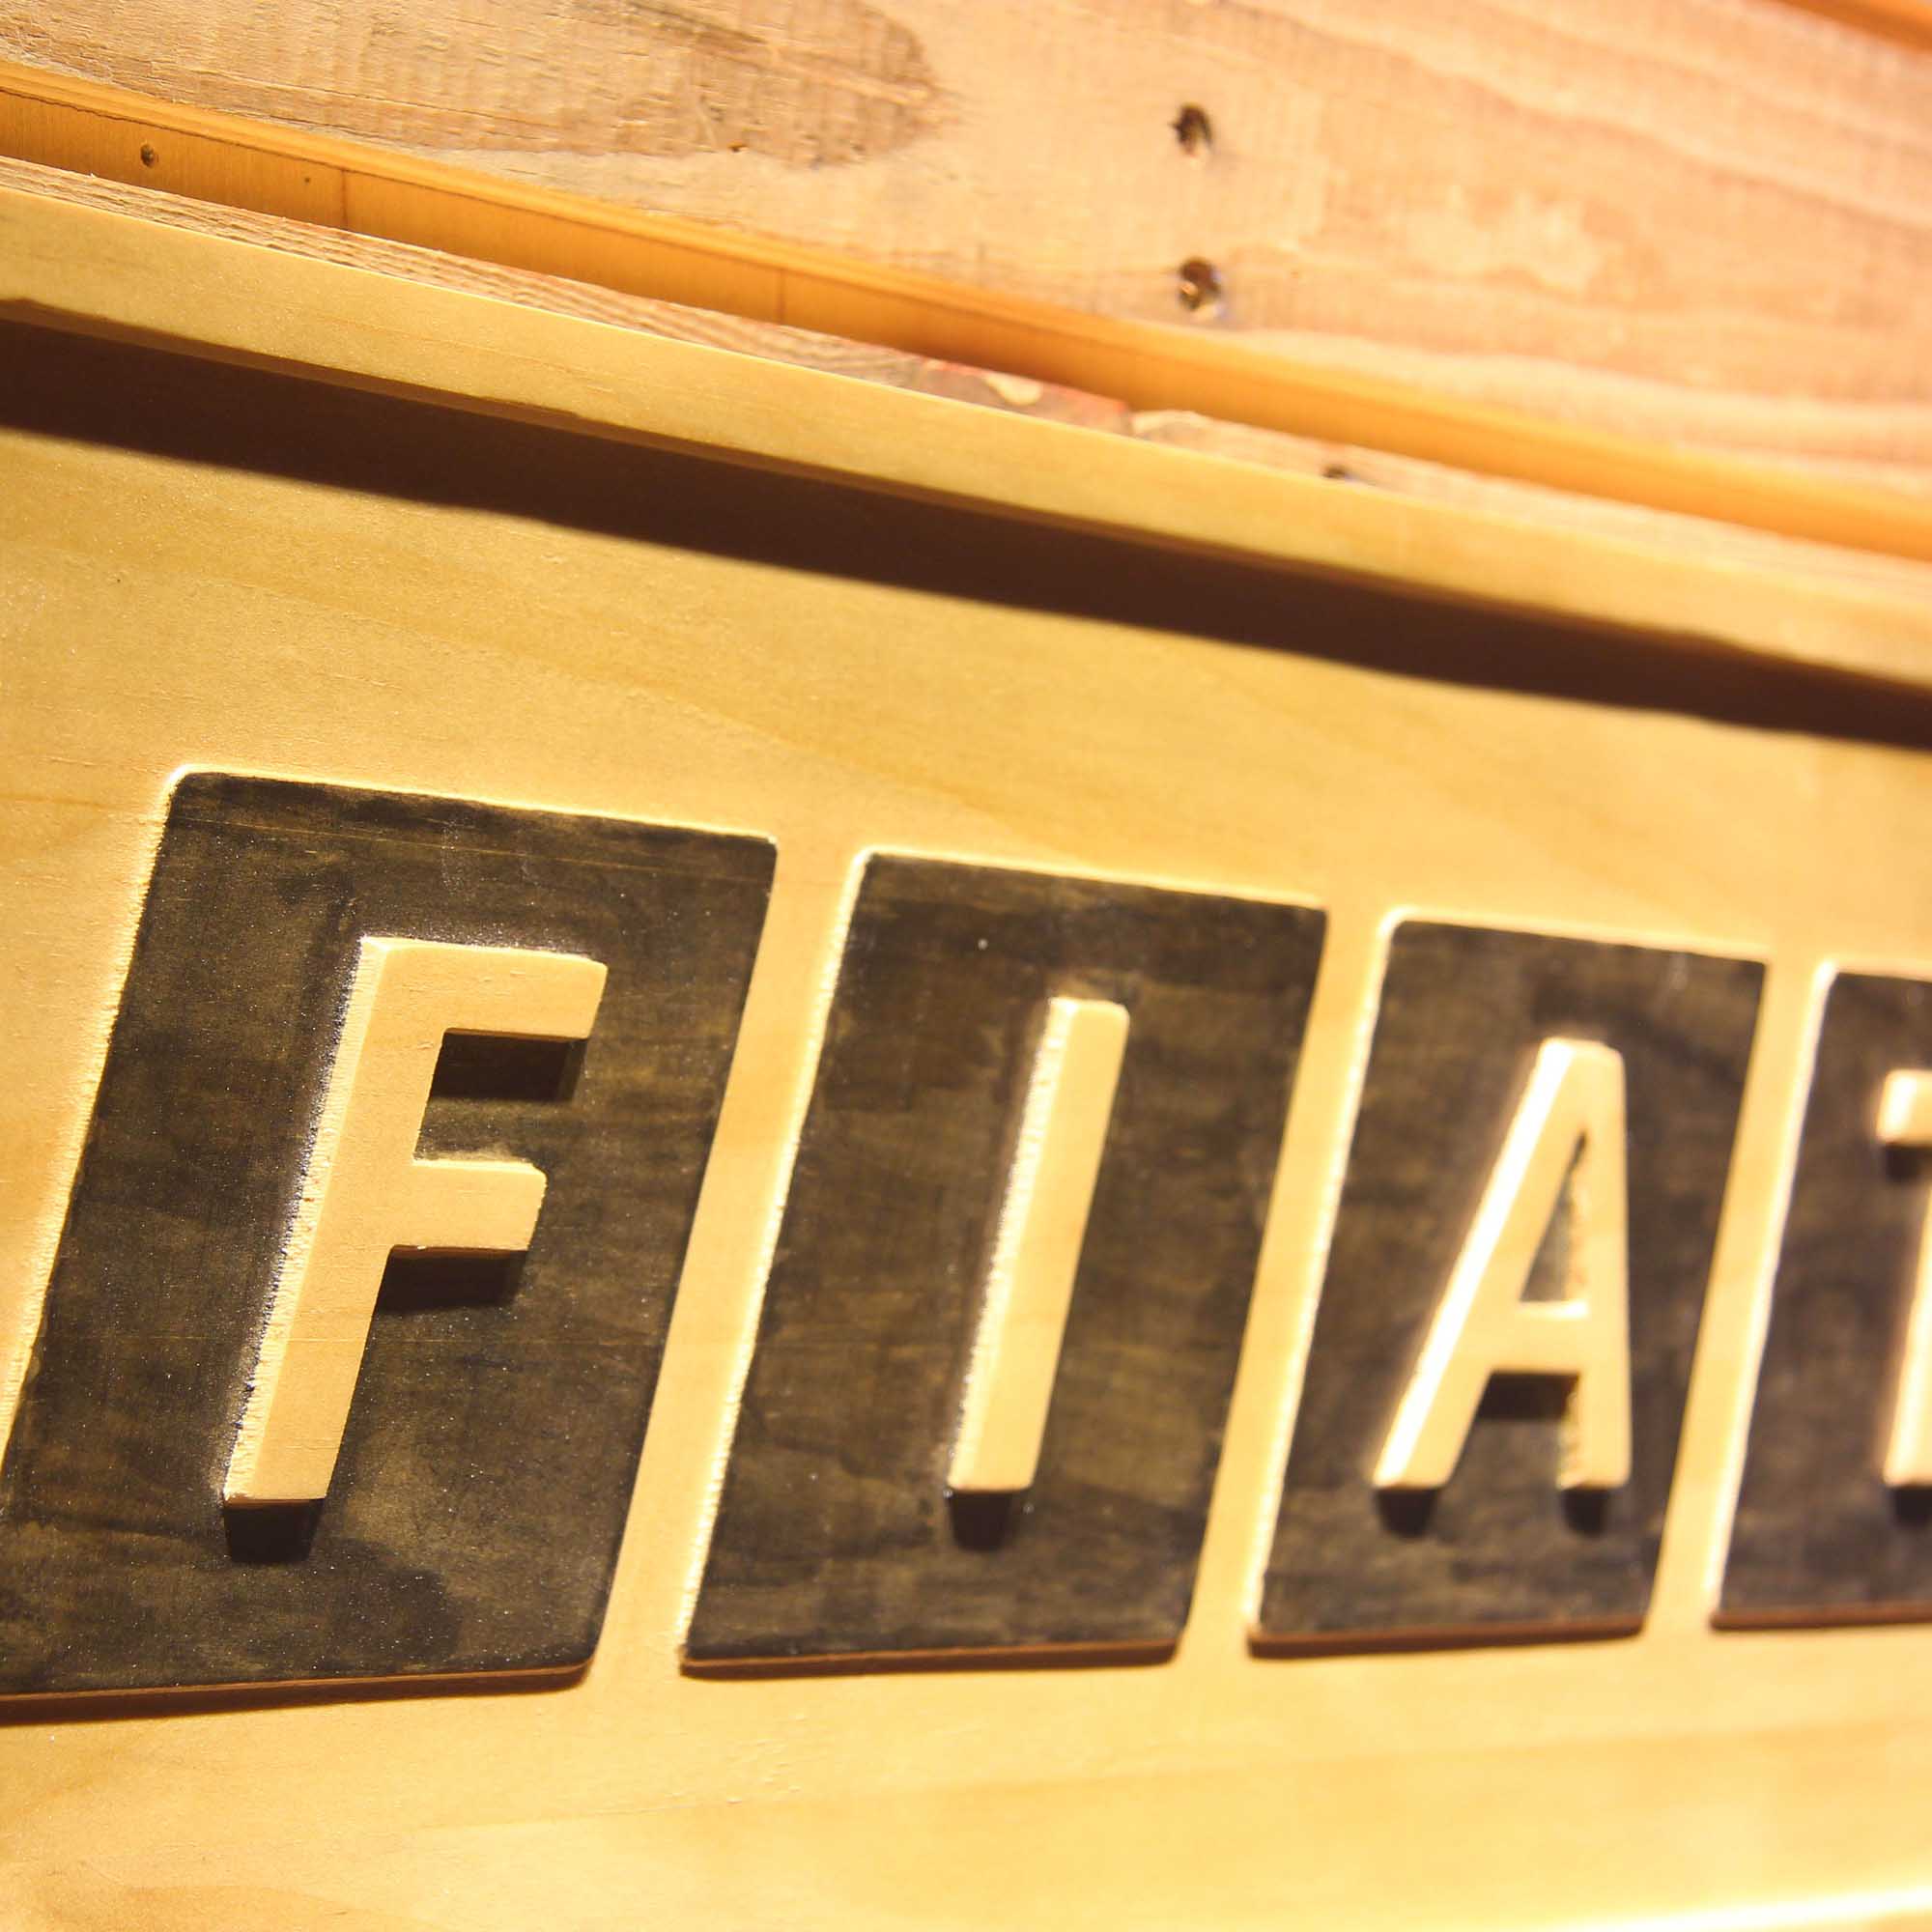 Fiat Automobiles 3D Wooden Engrave Sign